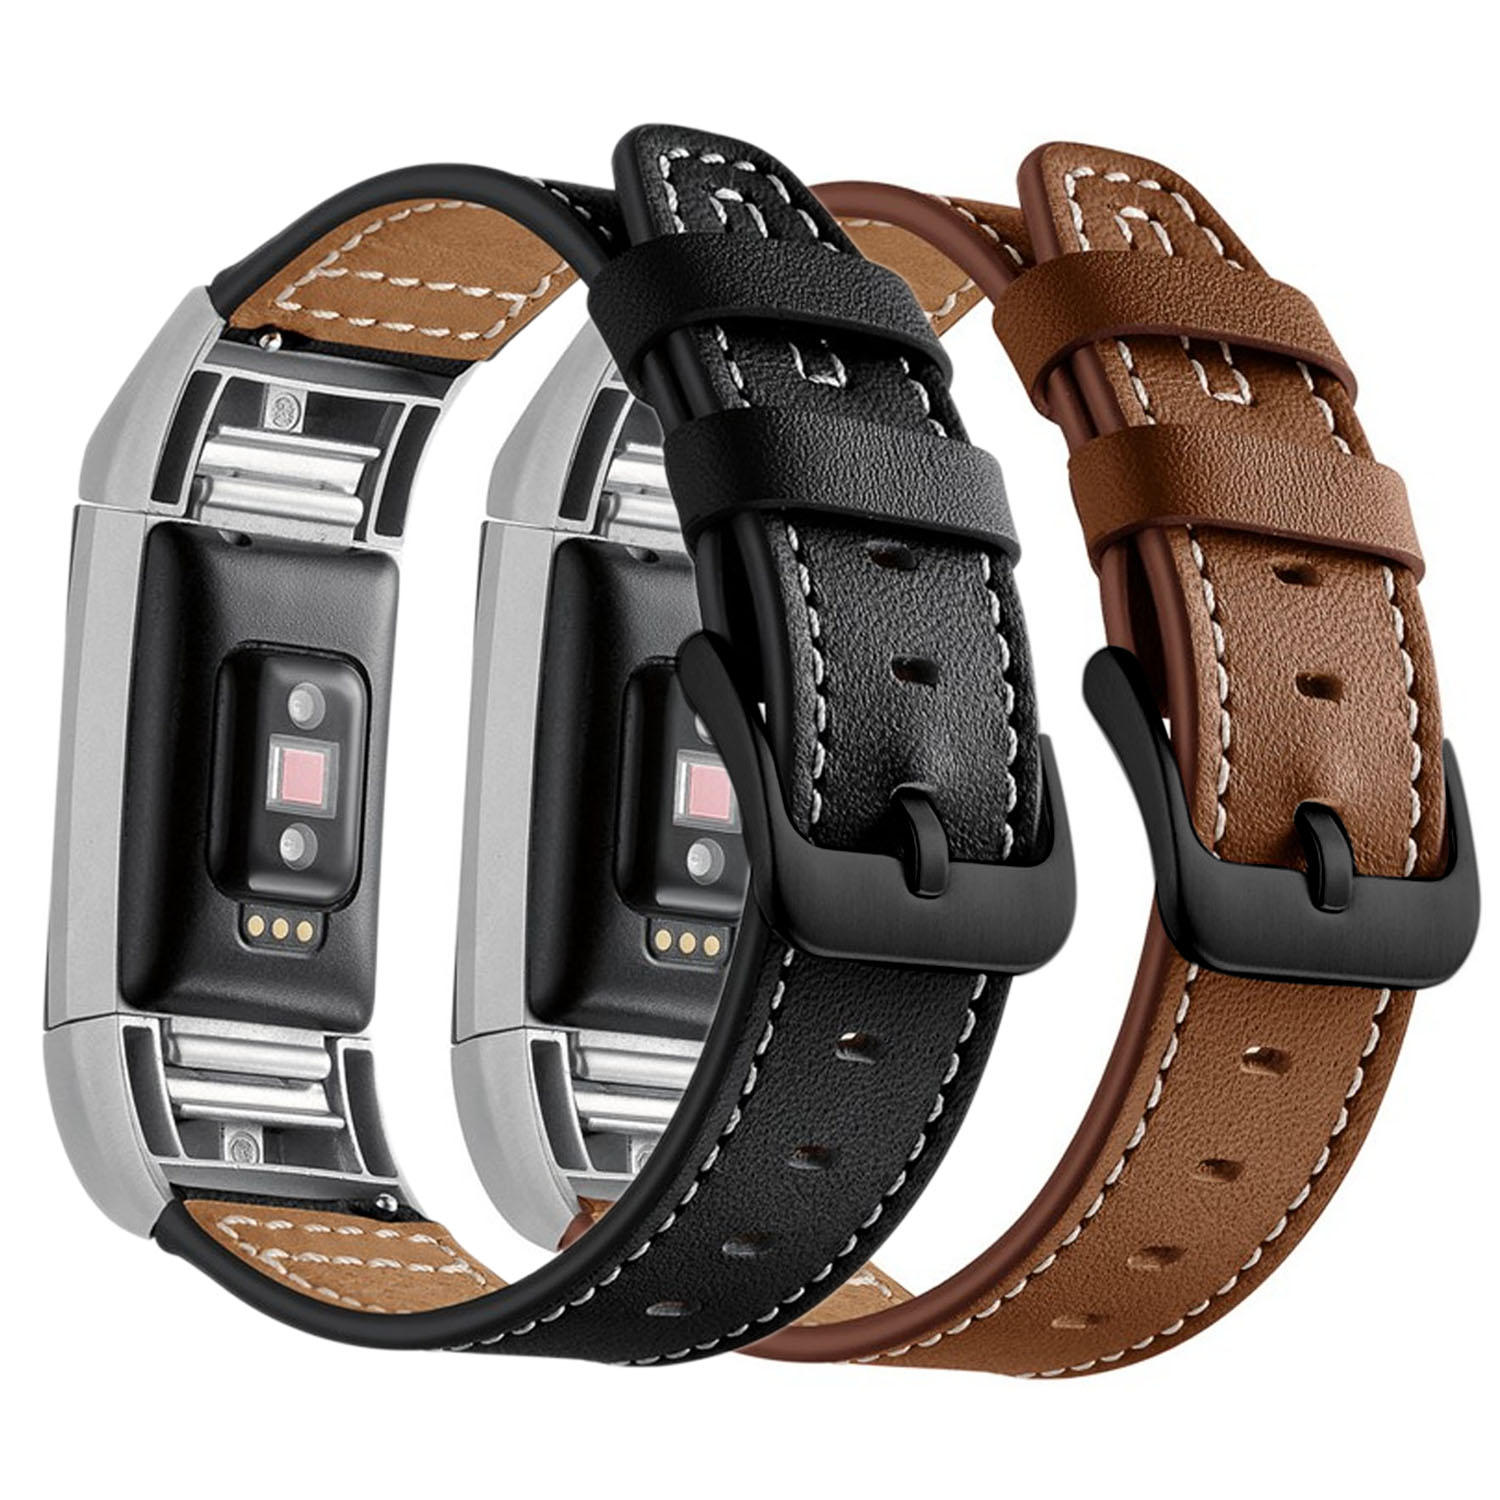 Bakeey lederen horlogeband polsbandje voor Xiaomi Amazfit Bip Youth Edition Smart Watch niet-origine